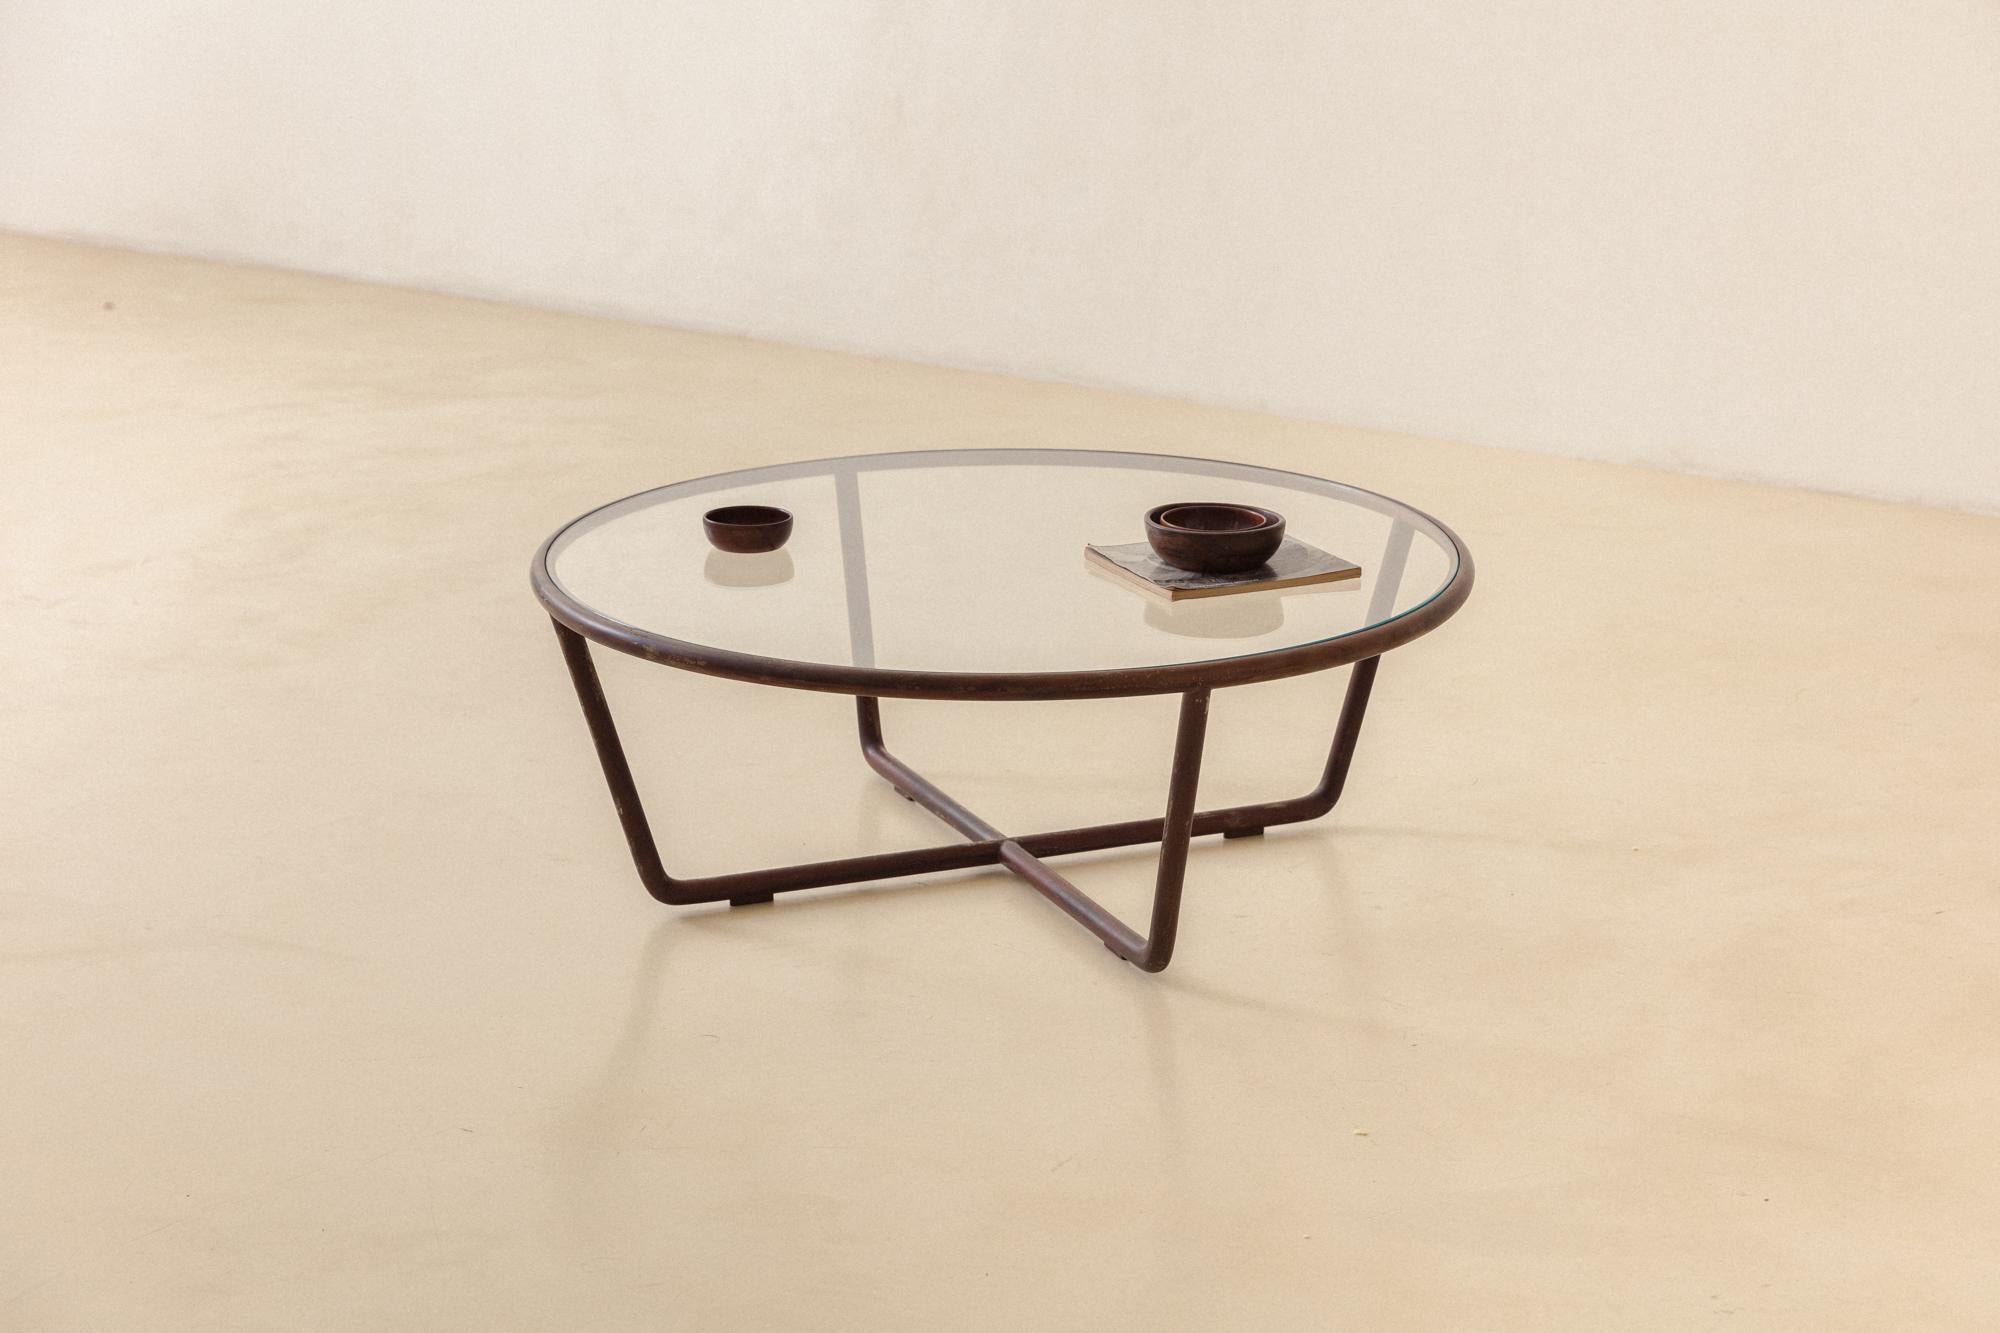 Joaquim Tenreiro (1906-1992) entwarf diesen runden Couchtisch 1947 - zur gleichen Zeit, in der er auch andere Estrutural-Stücke schuf, wie die berühmten Esszimmerstühle und den Esstisch.

Wie andere von Tenreiro entworfene Möbelstücke zeichnet sich